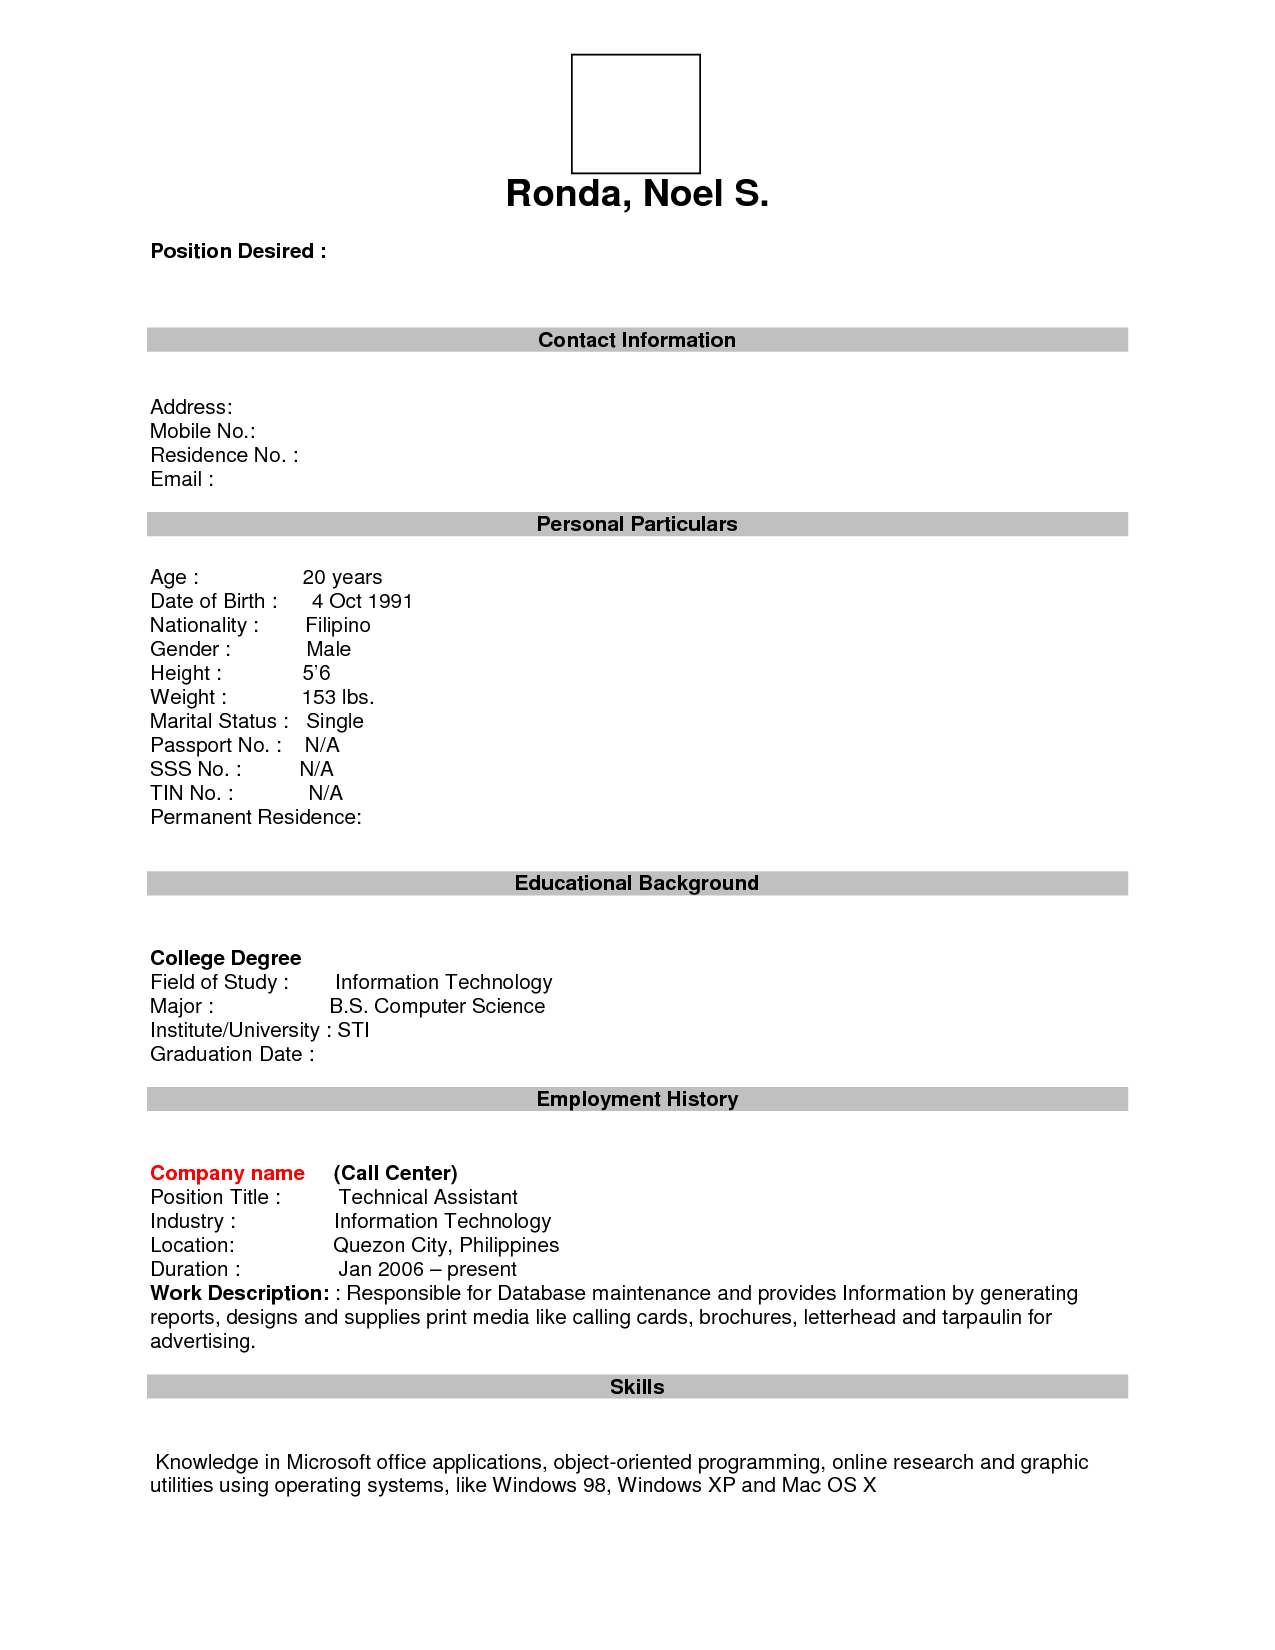 Blank Resume Form Download Image